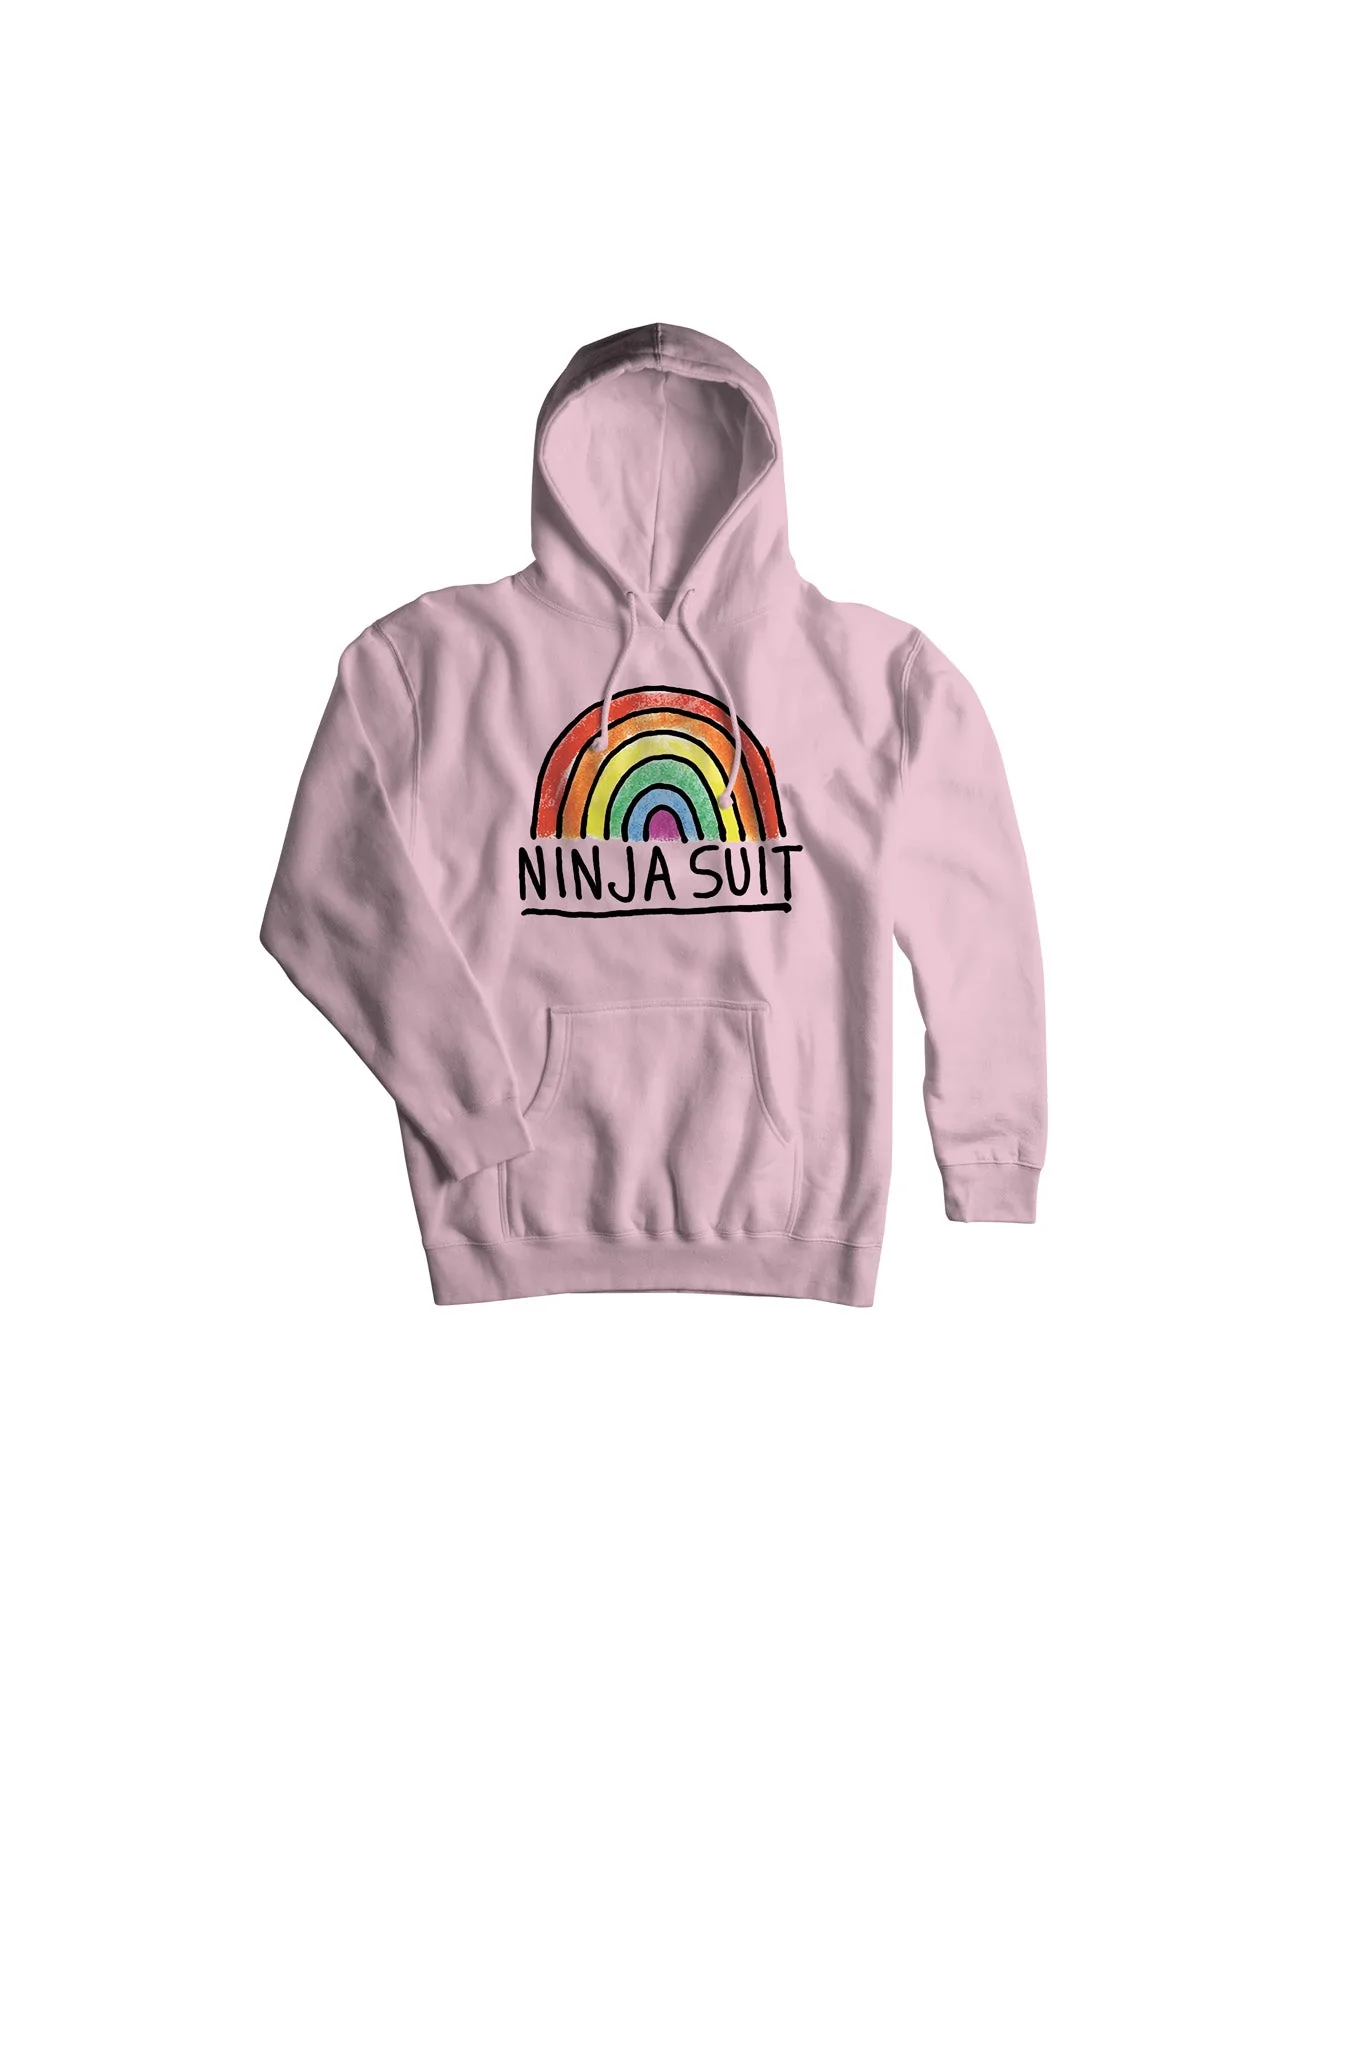 Airblaster Ninja Rainbow hoody pale pink